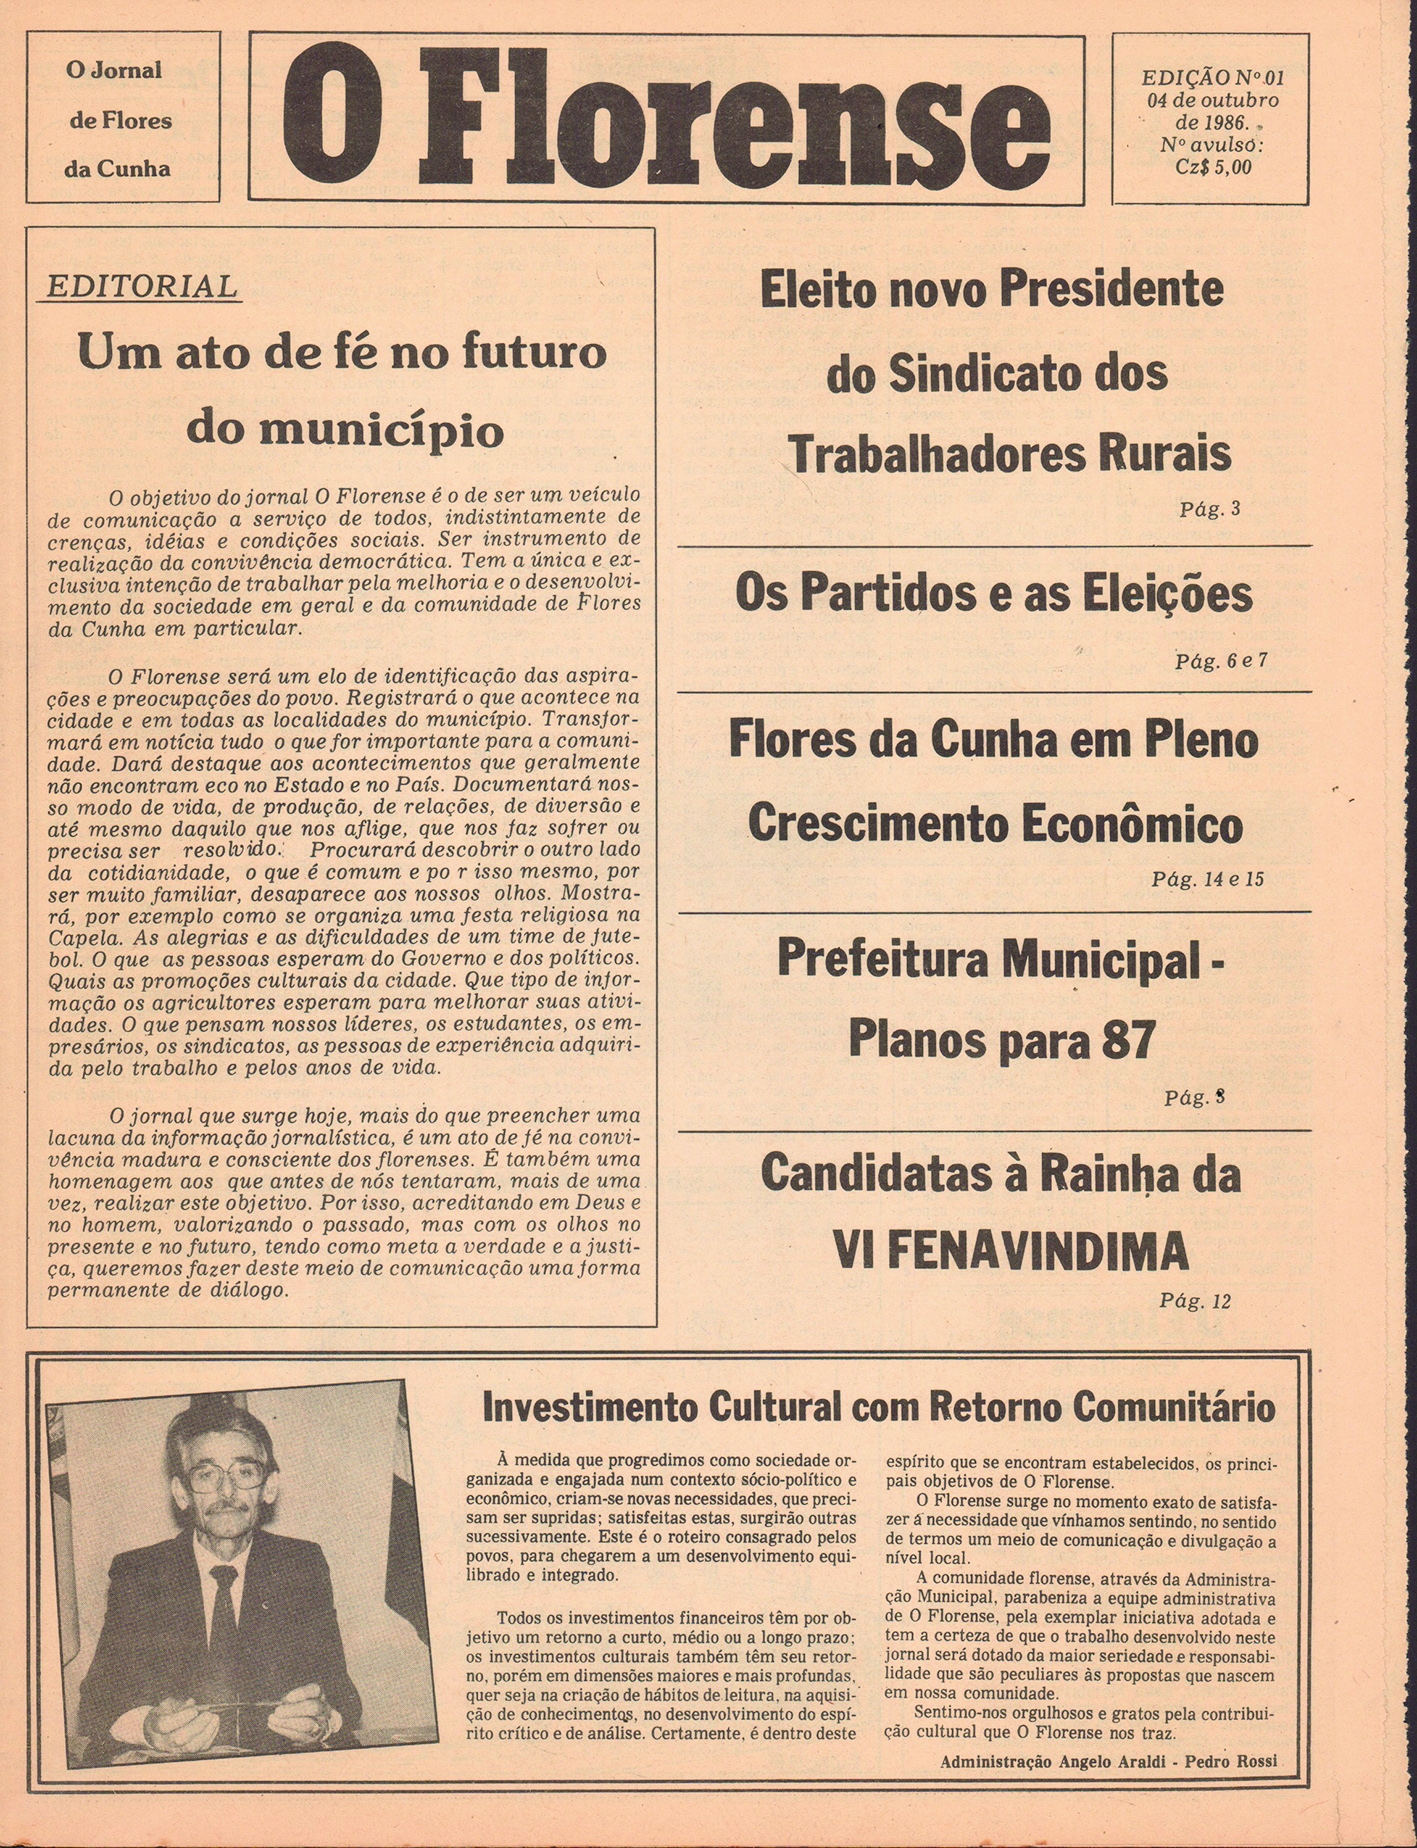 Capa da primeira edição do Jornal O Florense, do dia 4 de outubro de 1986. - Arquivo OF